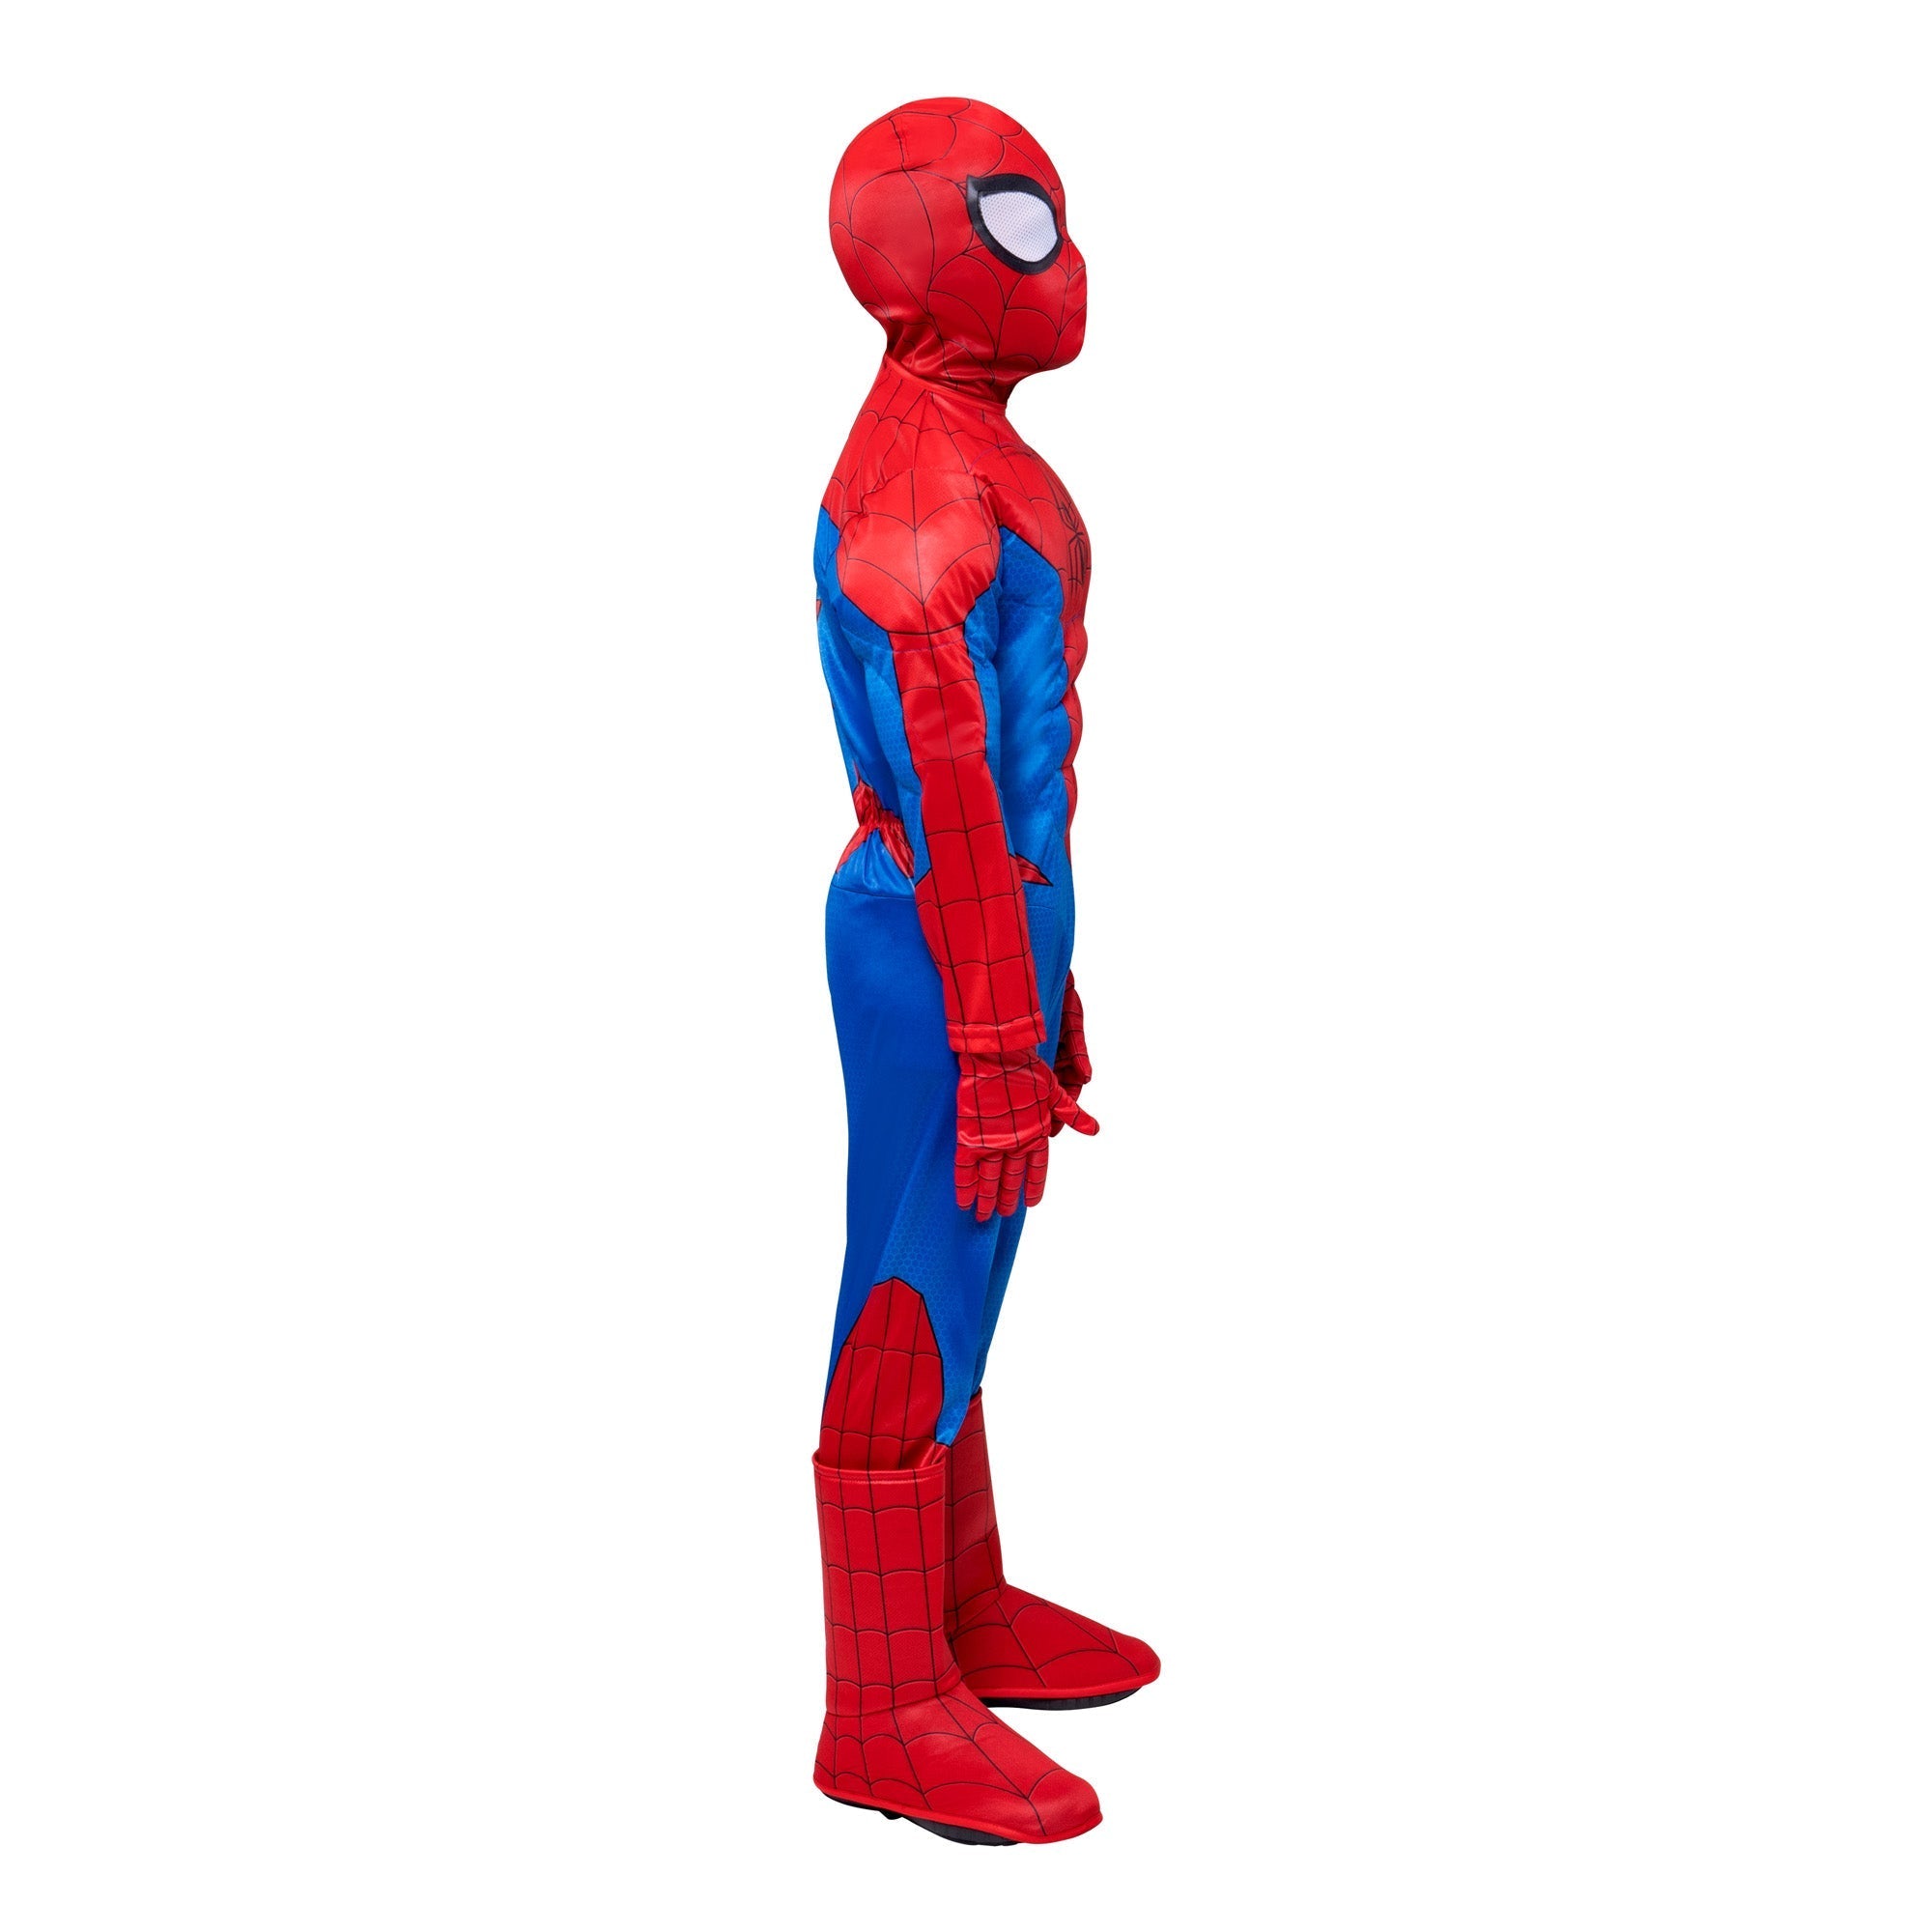 Costume Spiderman Deluxe de Marvel pour garçons【Achat en ligne】